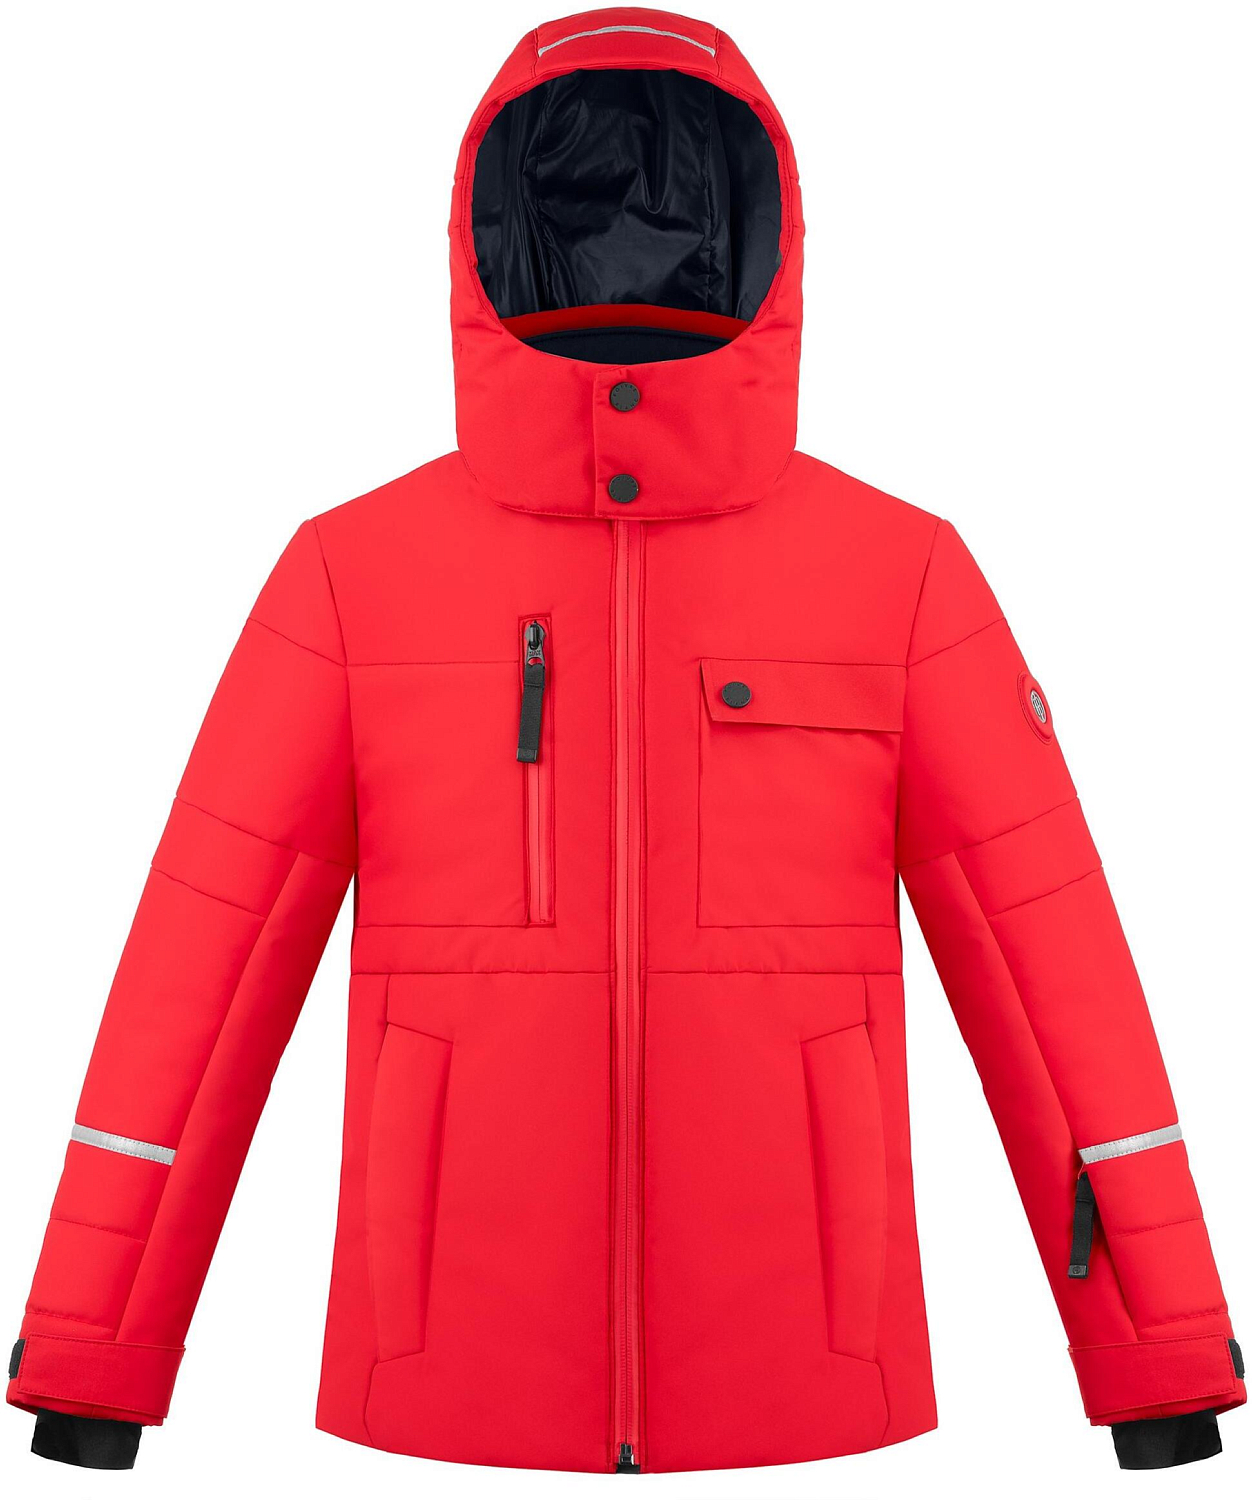 Куртка горнолыжная детская Poivre Blanc 2019-20 W19-0900-JRBY Scarlet red 3